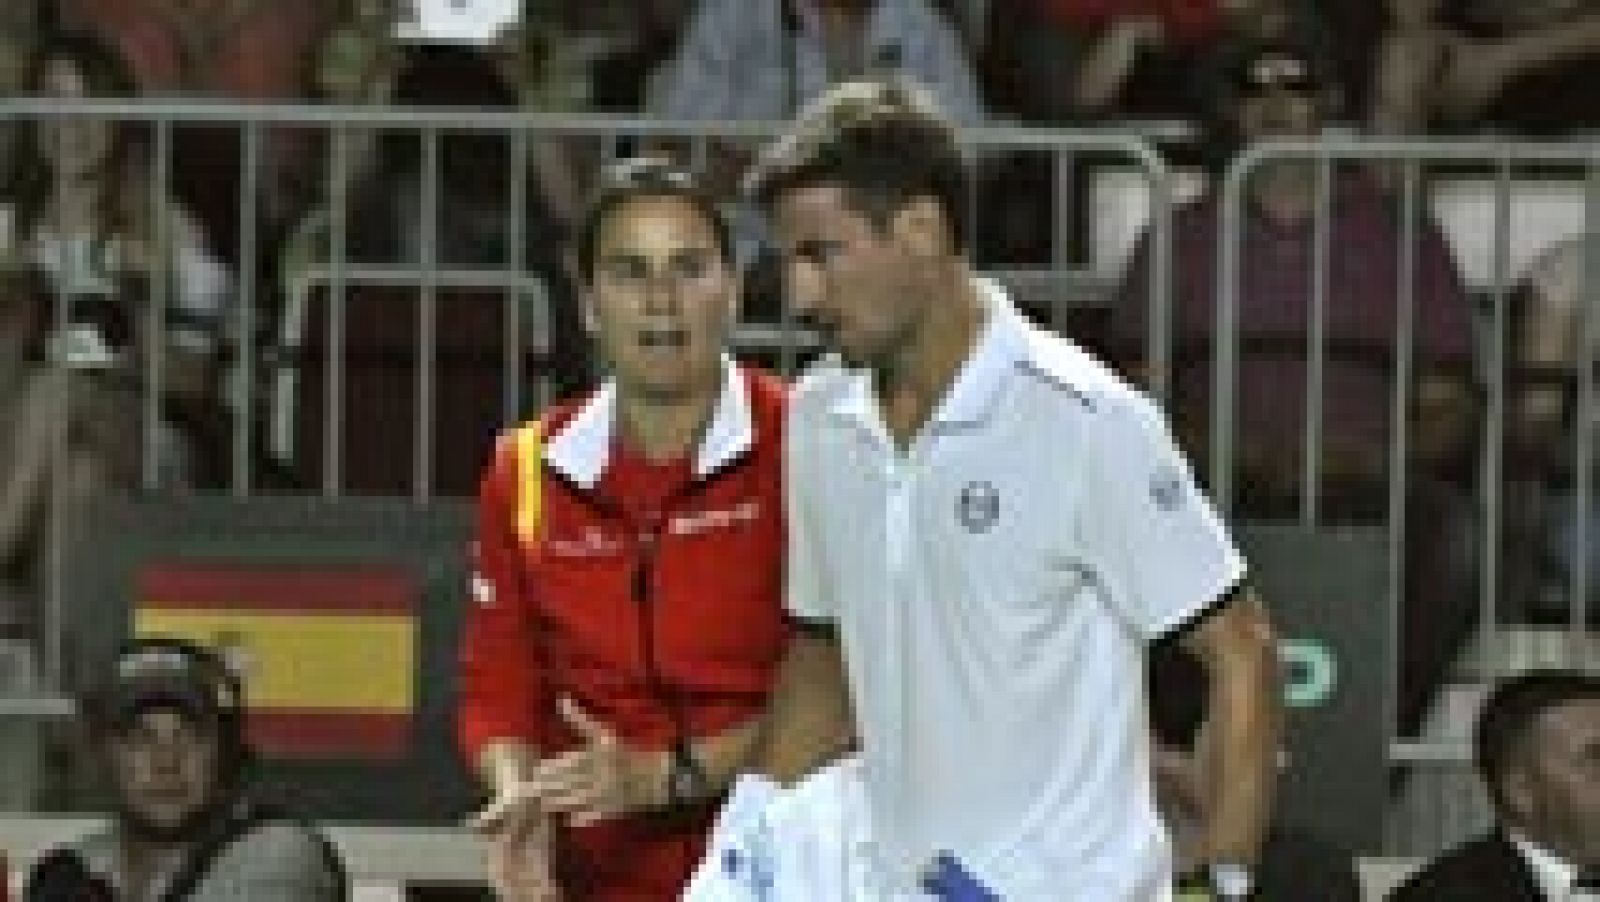 Tomy Robredo y Pablo Andújar han hecho los dos primeros muntos para el equipo español en la eliminatoria de ascenso de la Copa Davis, tras derrotar a Andrey Rublev (6-2,6-3 y 6-3) y Karen Khachanov (6-3, 6-3 y 6-2), respectivamente.